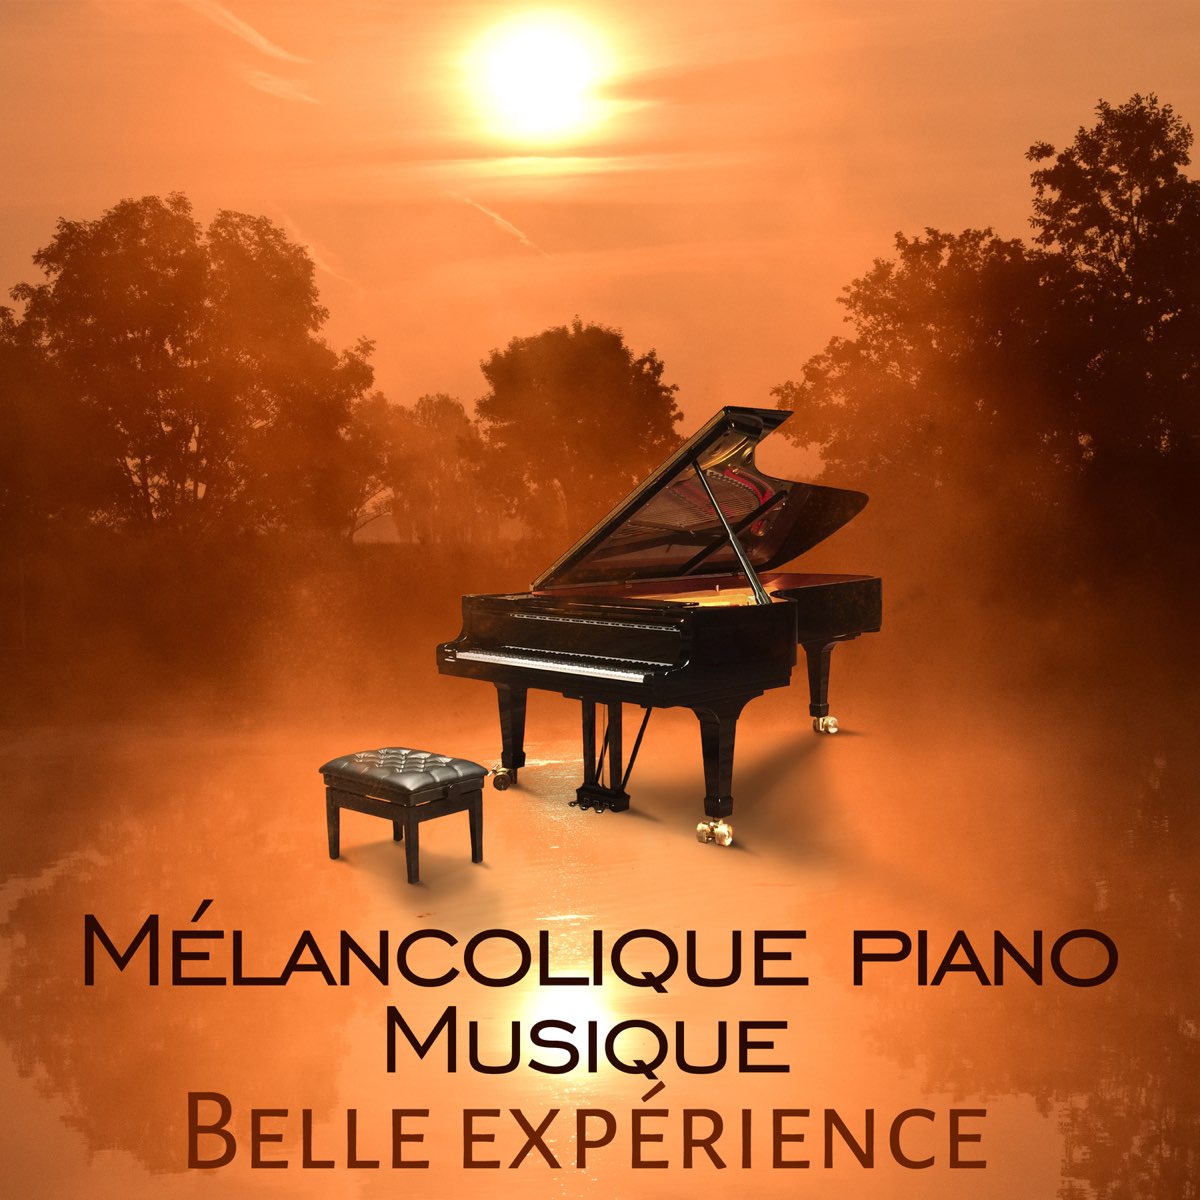 Mélancolique piano musique - Belle expérience, jolie sons, relaxation,  réflexion et calme méditation by Triste piano musique oasis on Apple Music